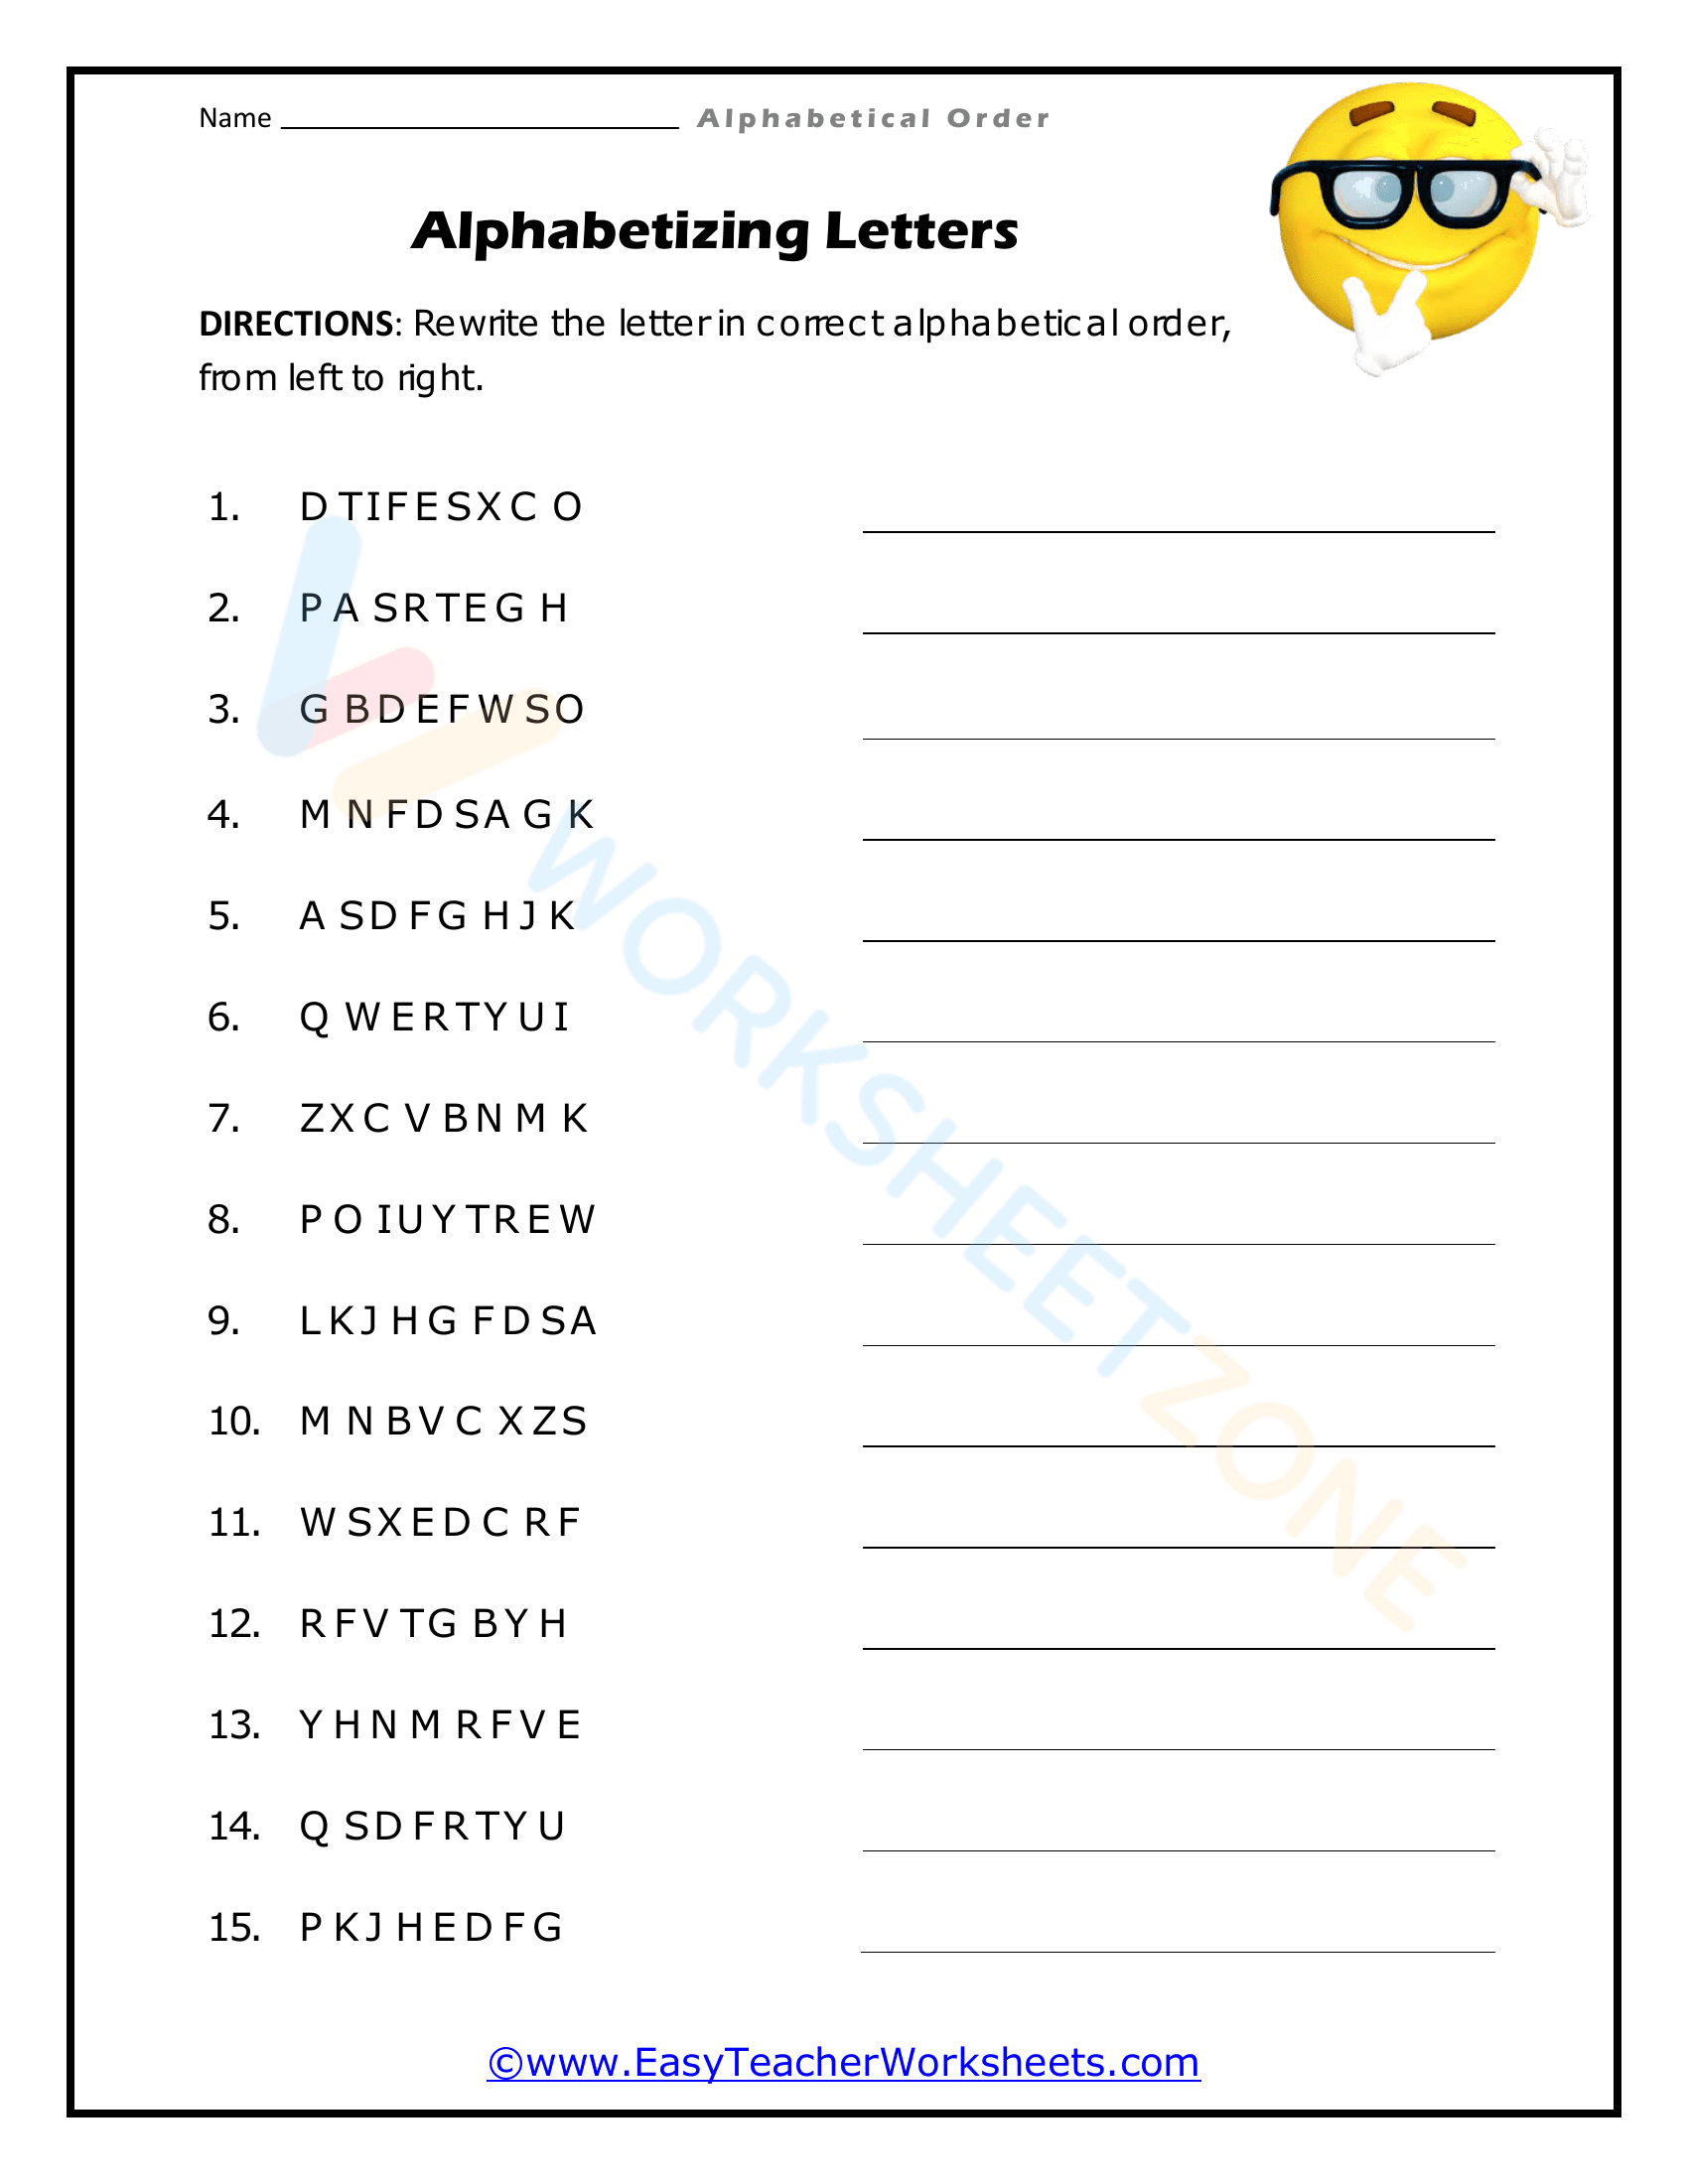 alphabetical order worksheets 9